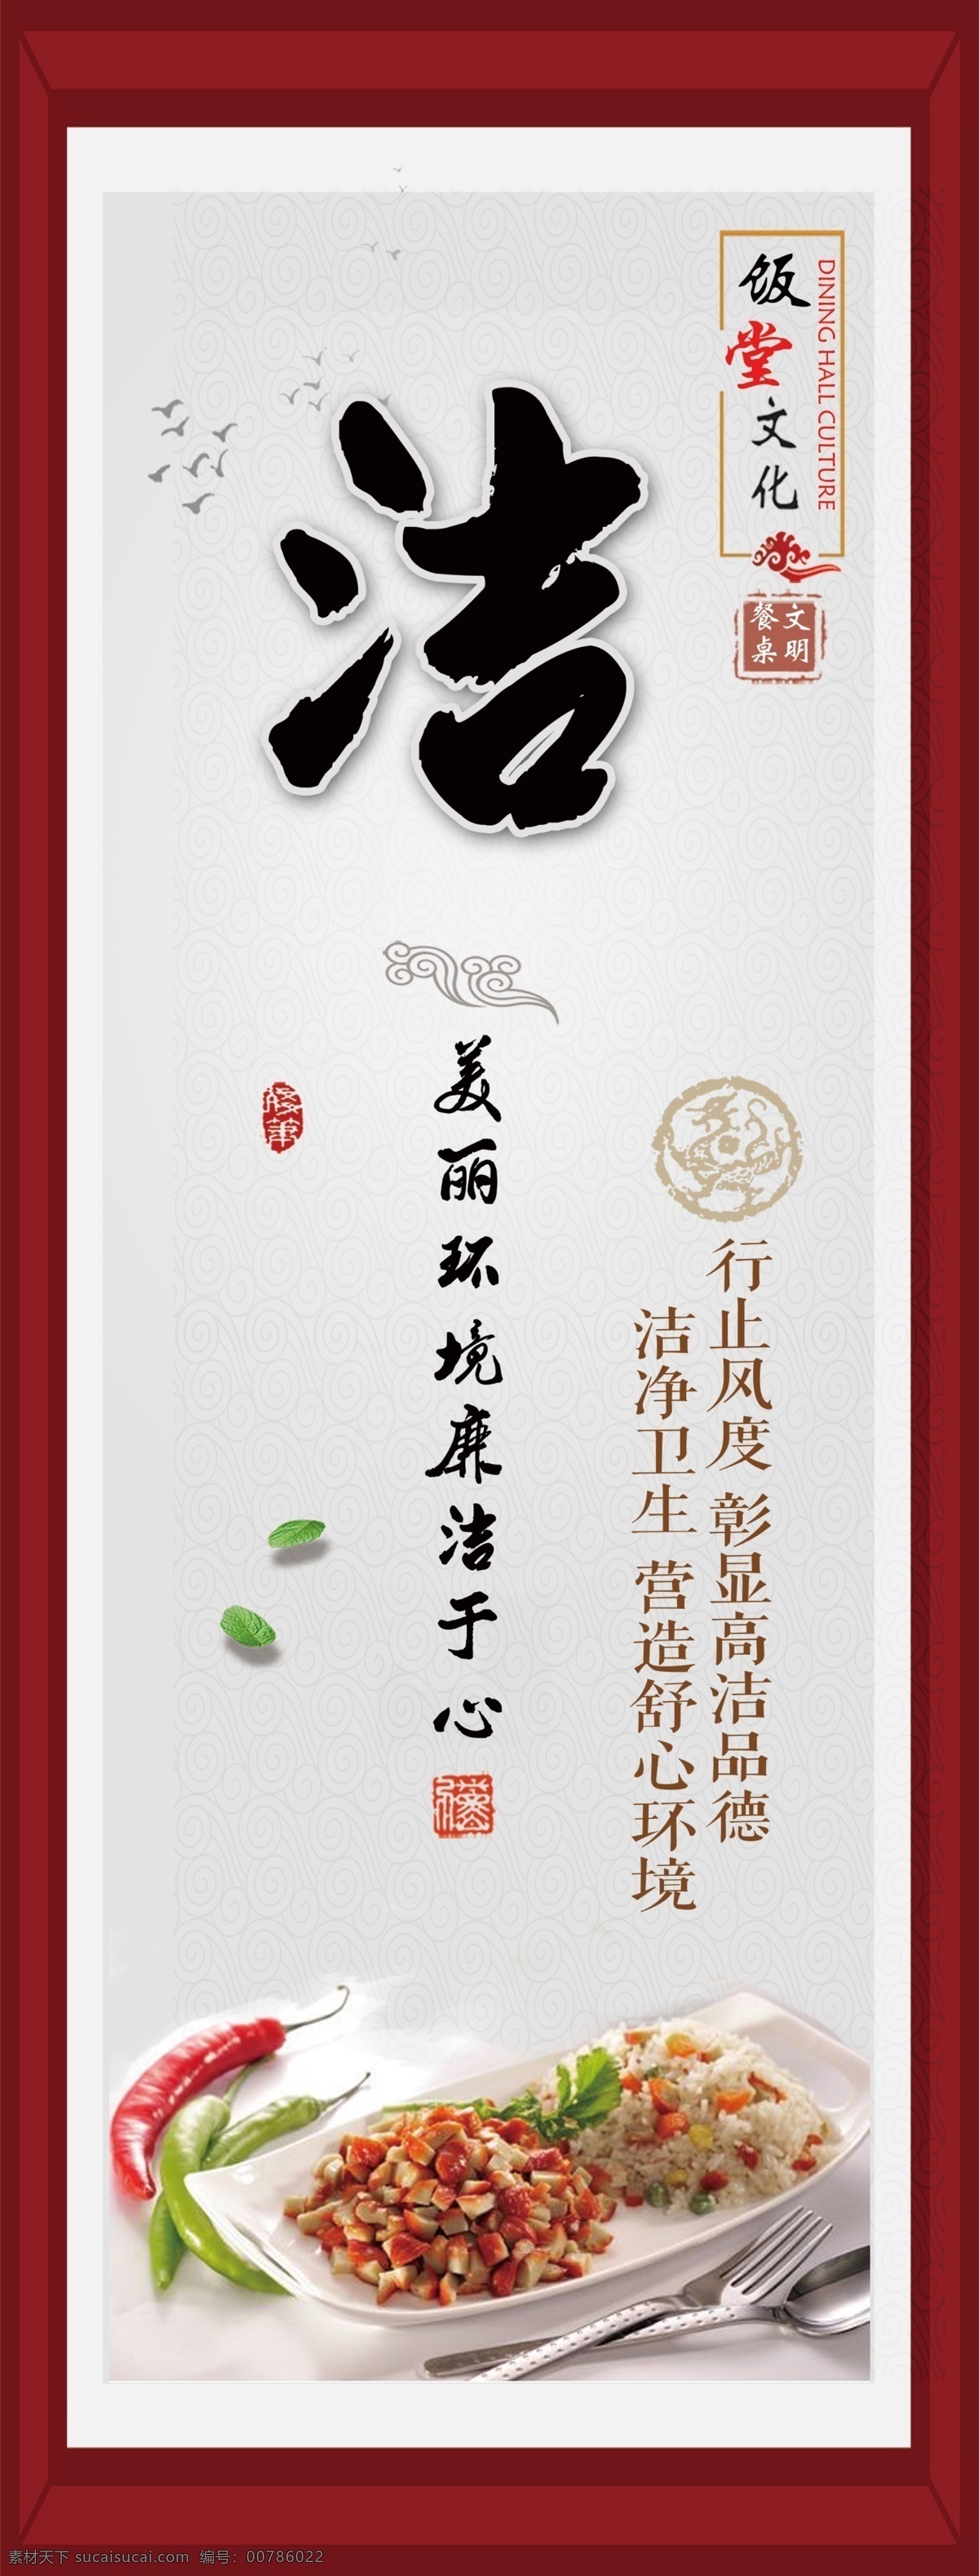 饭堂标语 标语 古典 中国风 整洁 干净 食堂标语 饭堂 室内广告设计